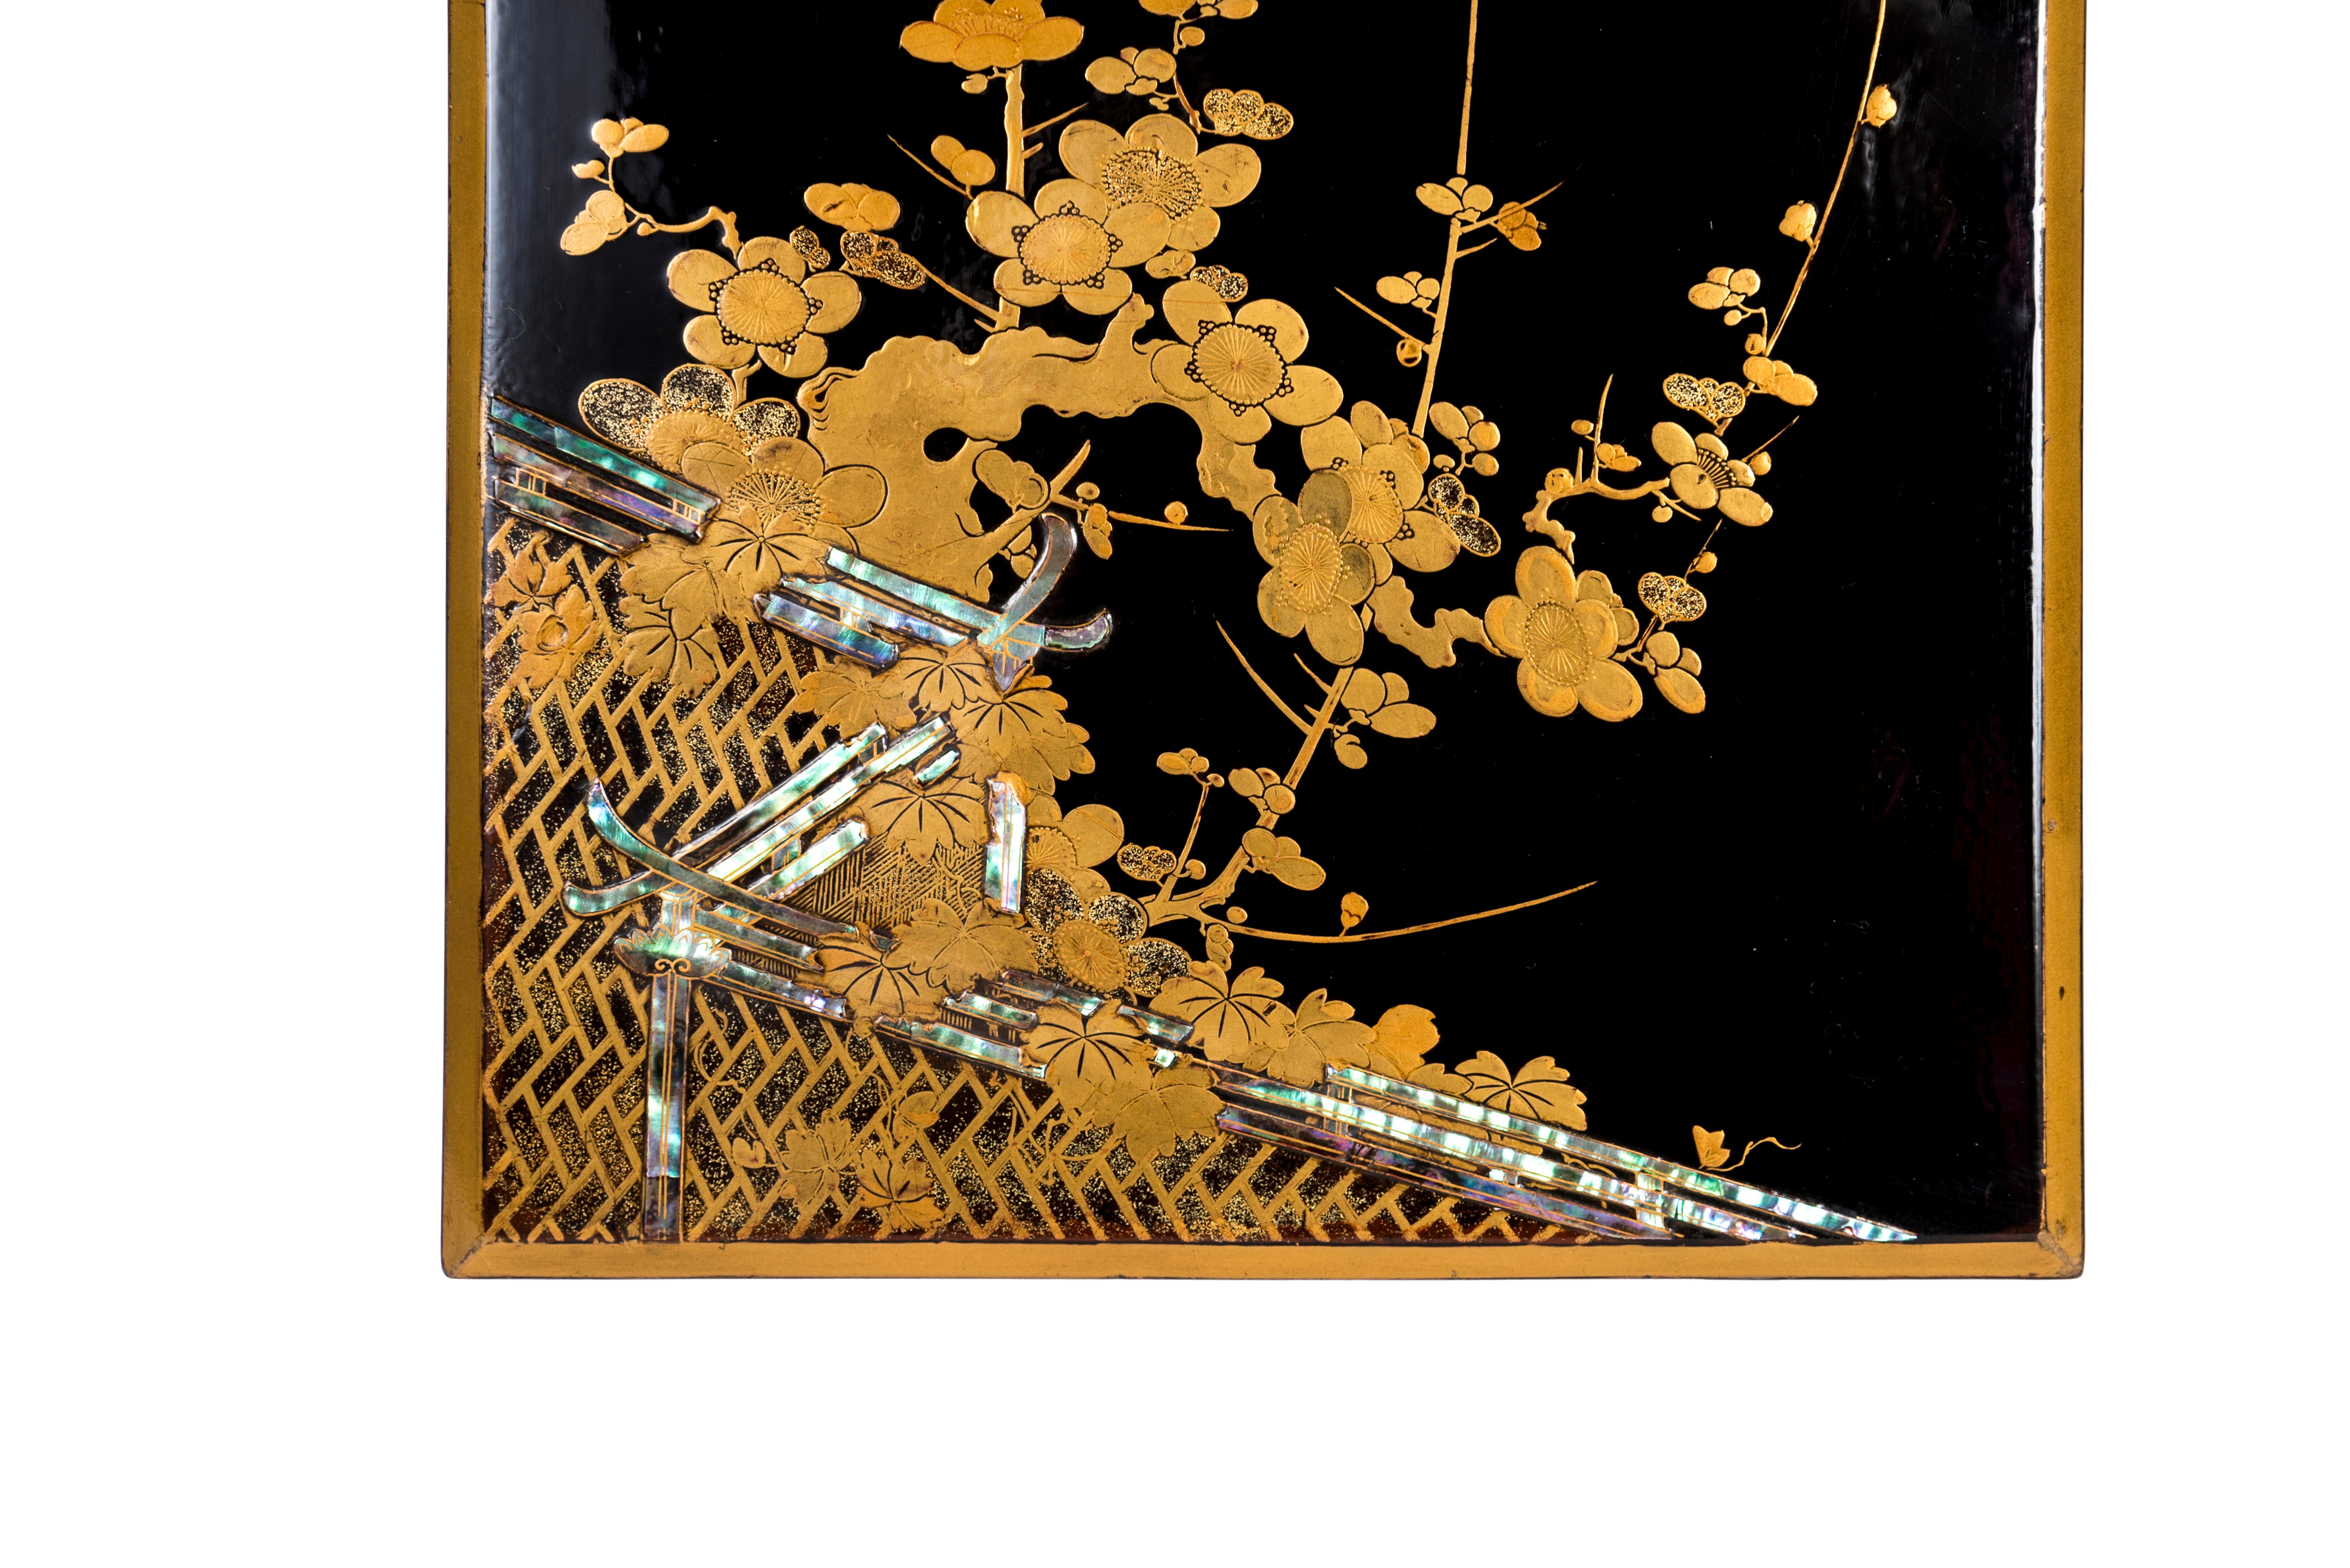 Schwarz-goldene Maki-e- und Hirame-ji-Lackdose, die einen blühenden Pflaumenbaumzweig darstellt, der sich in einer niedrigen Mauer verfangen hat, hervorgehoben durch Perlmutteinlagen (Raden).
Innenhülle aus Nashi-ji-Lack mit Mizuhiki-Fäden und